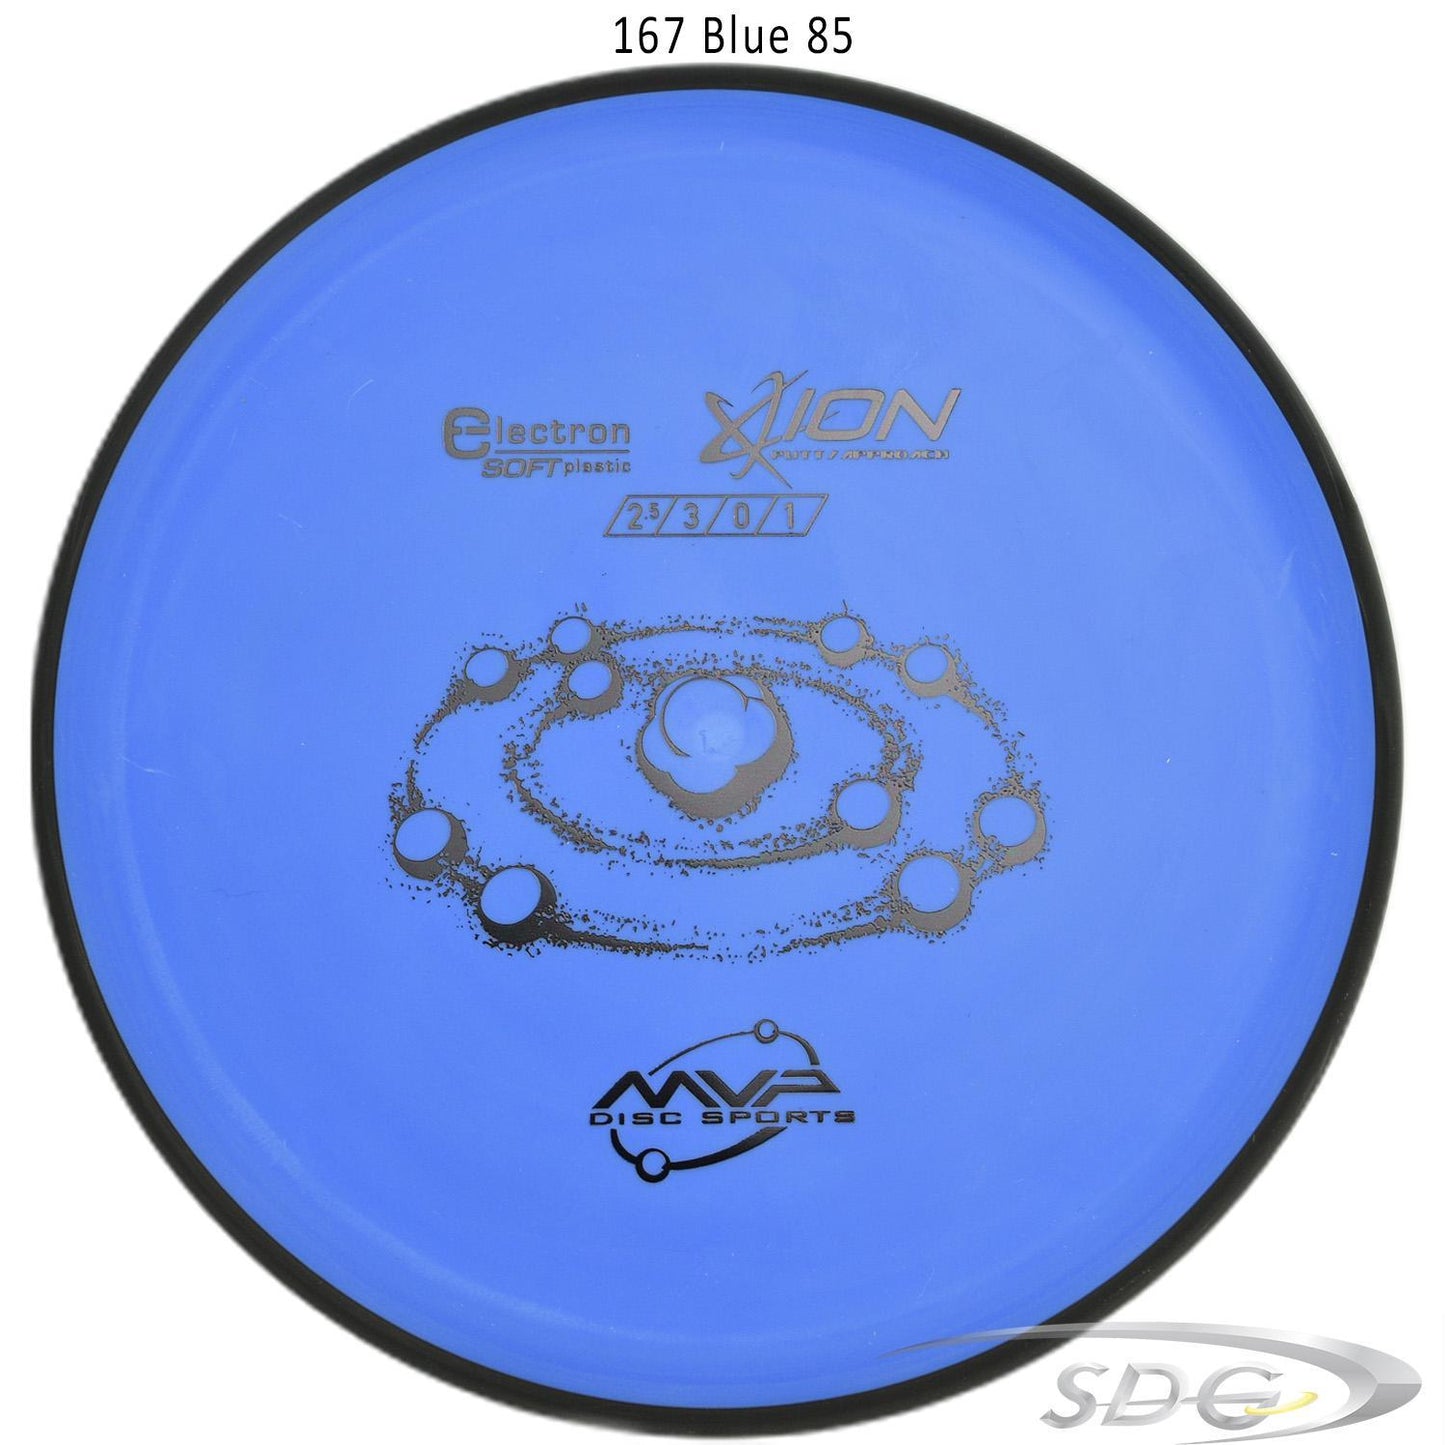 mvp-electron-ion-soft-disc-golf-putt-approach 167 Blue 85 